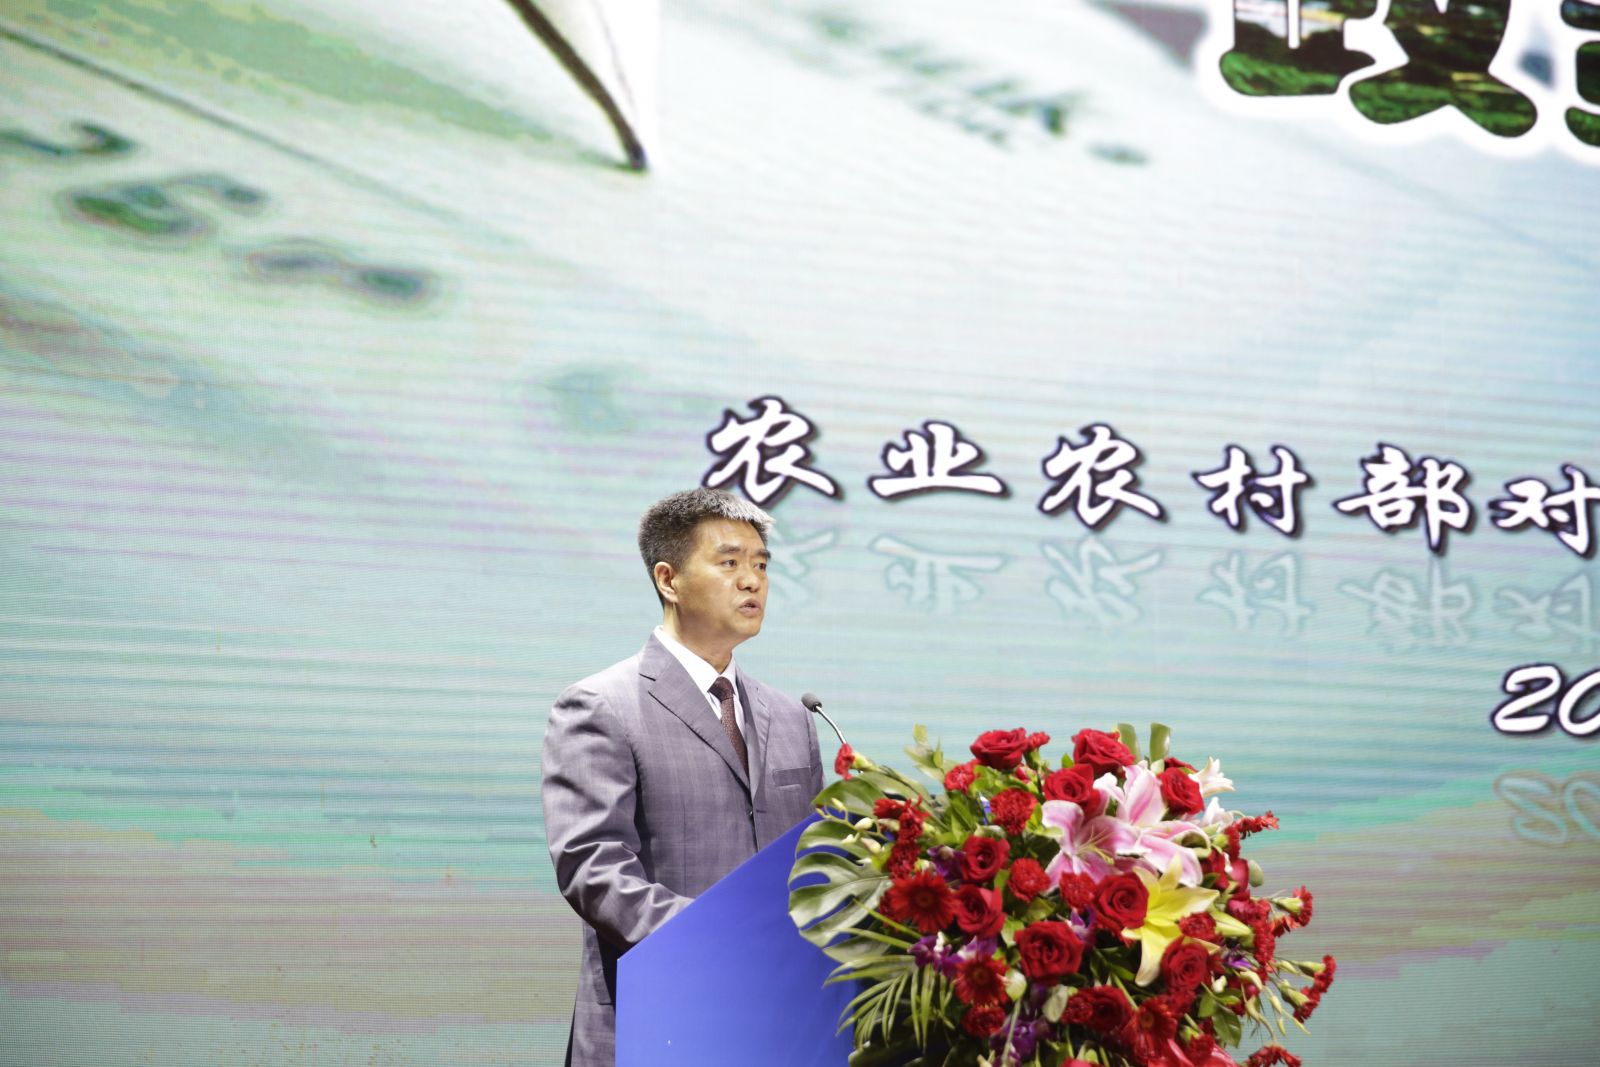 大陸農業農村部辦公廳台灣事務工作處處長楊慧軍介紹政策。